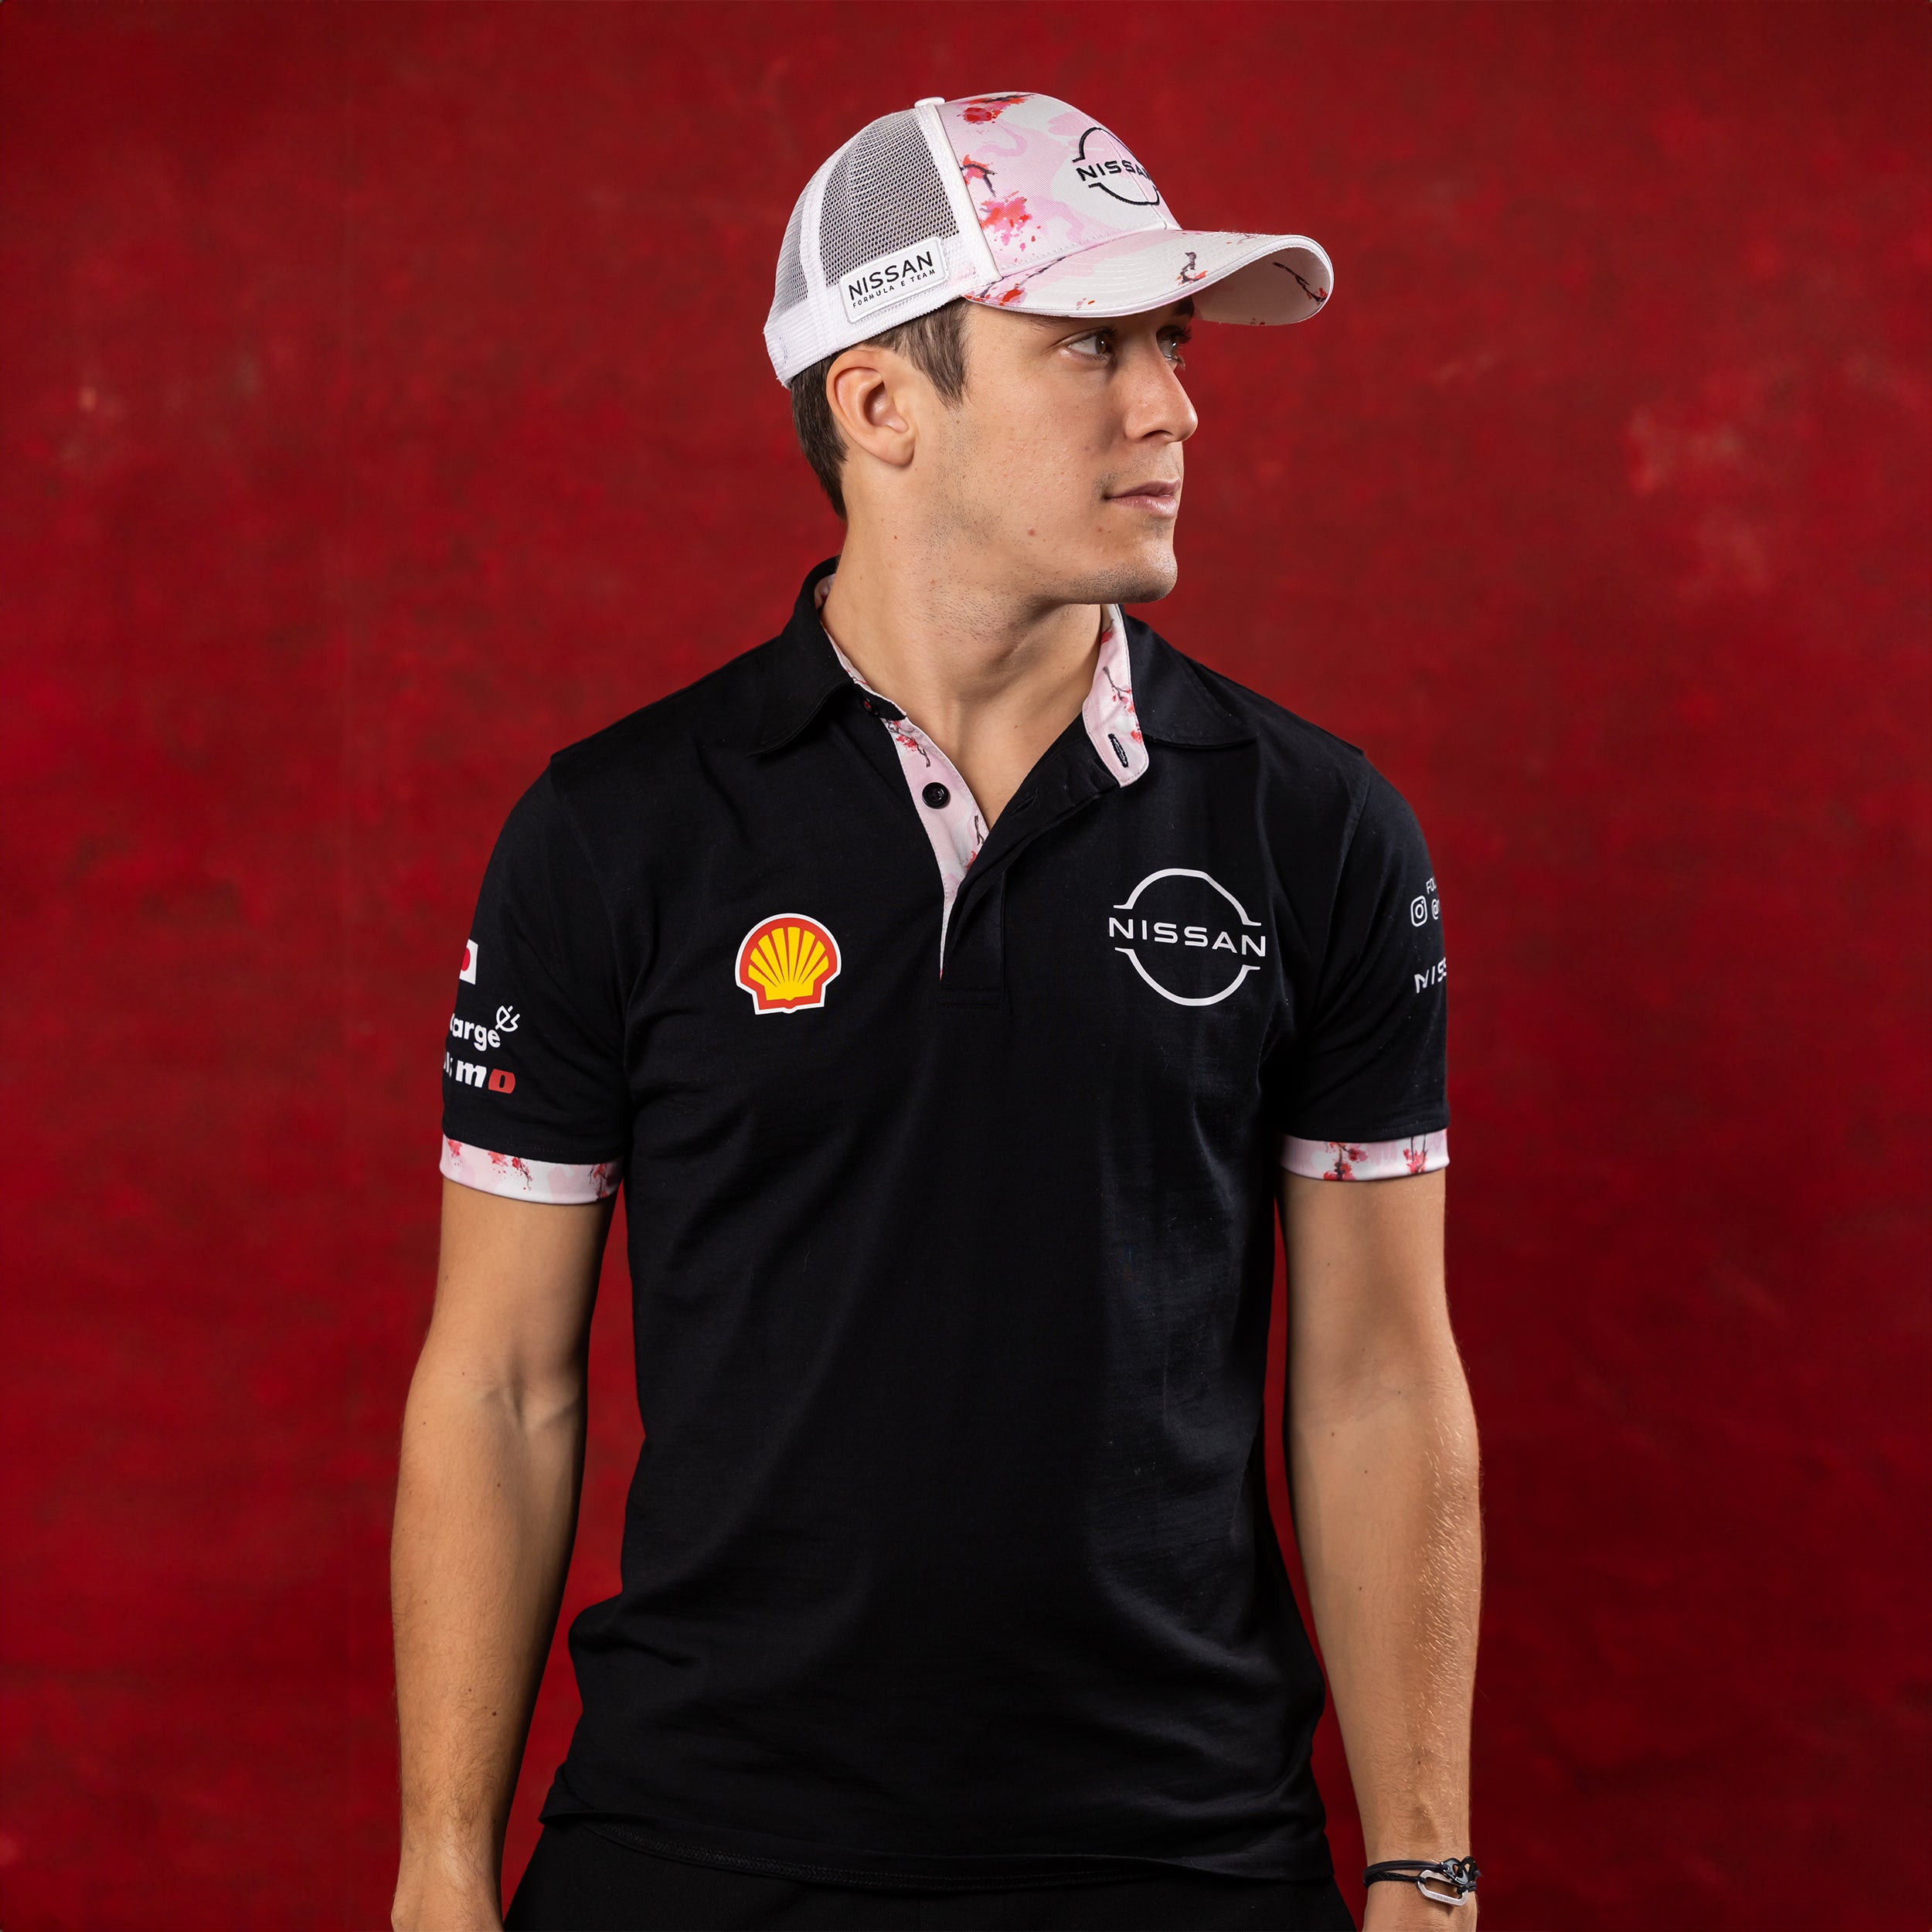 Nissan Formula E Team Replica Polo Shirt Unisex Black